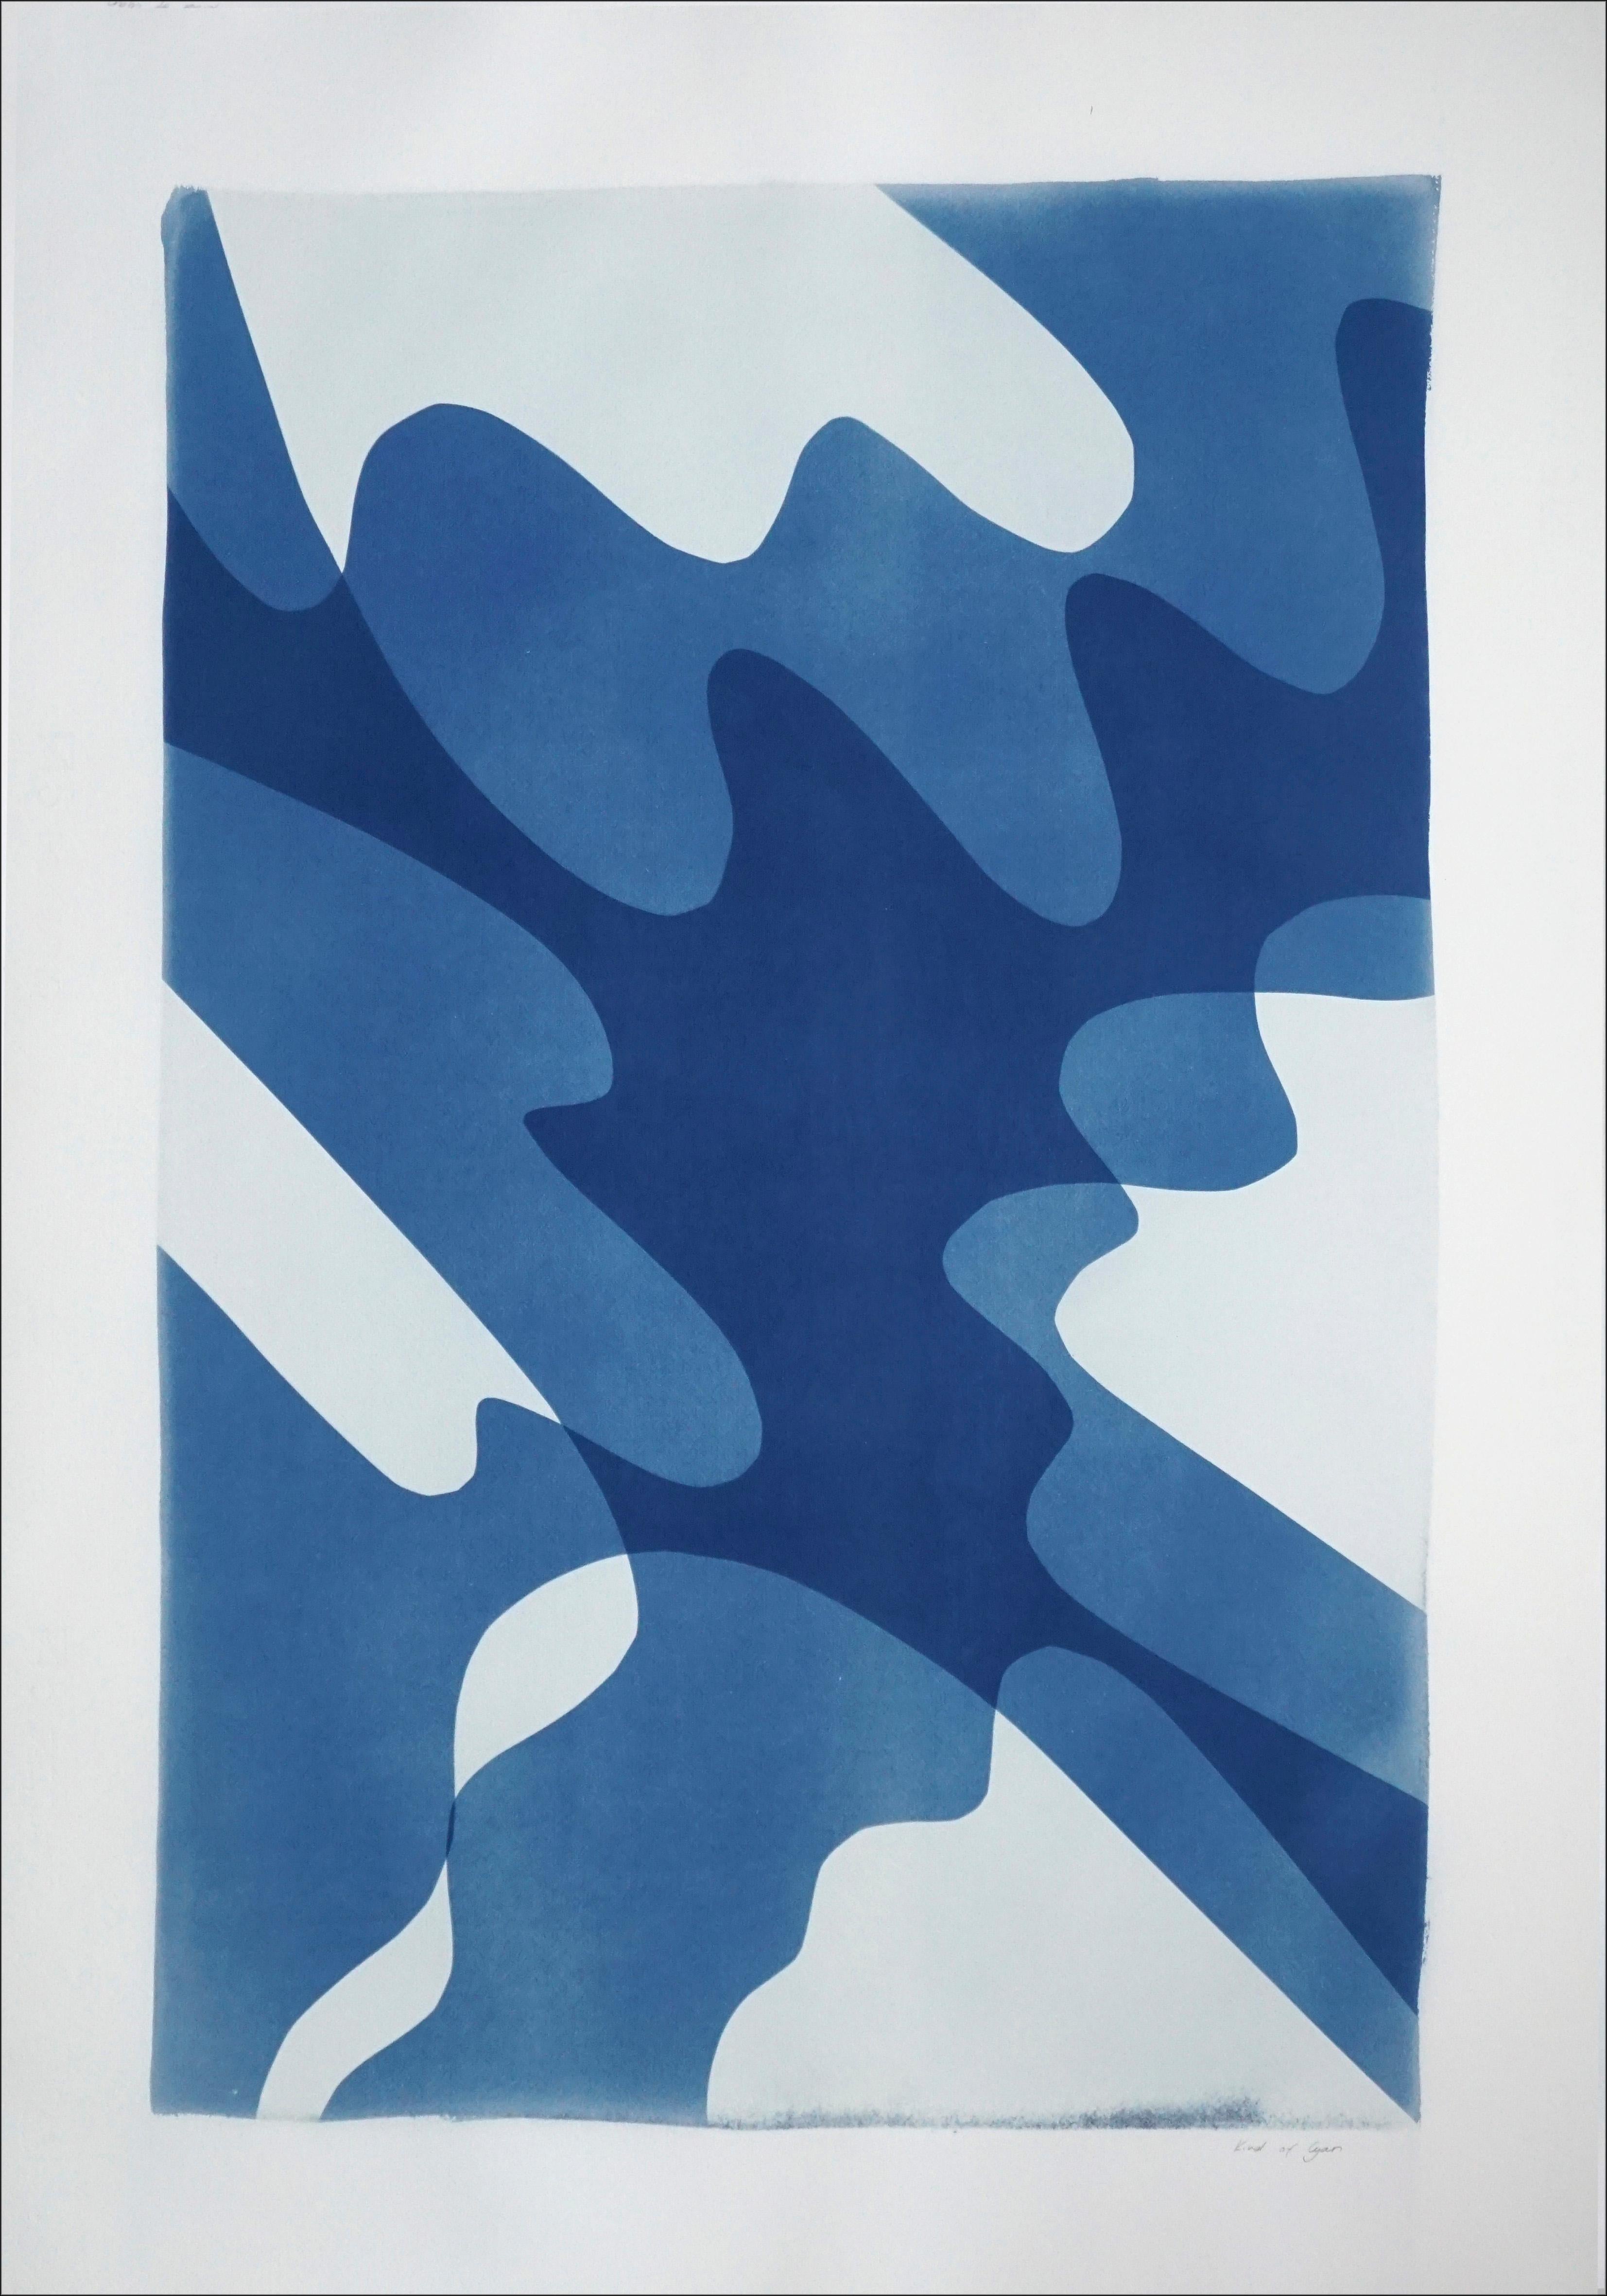 Ombres Shaky, monotype fait à la main de formes abstraites minimalistes et de couches en bleu